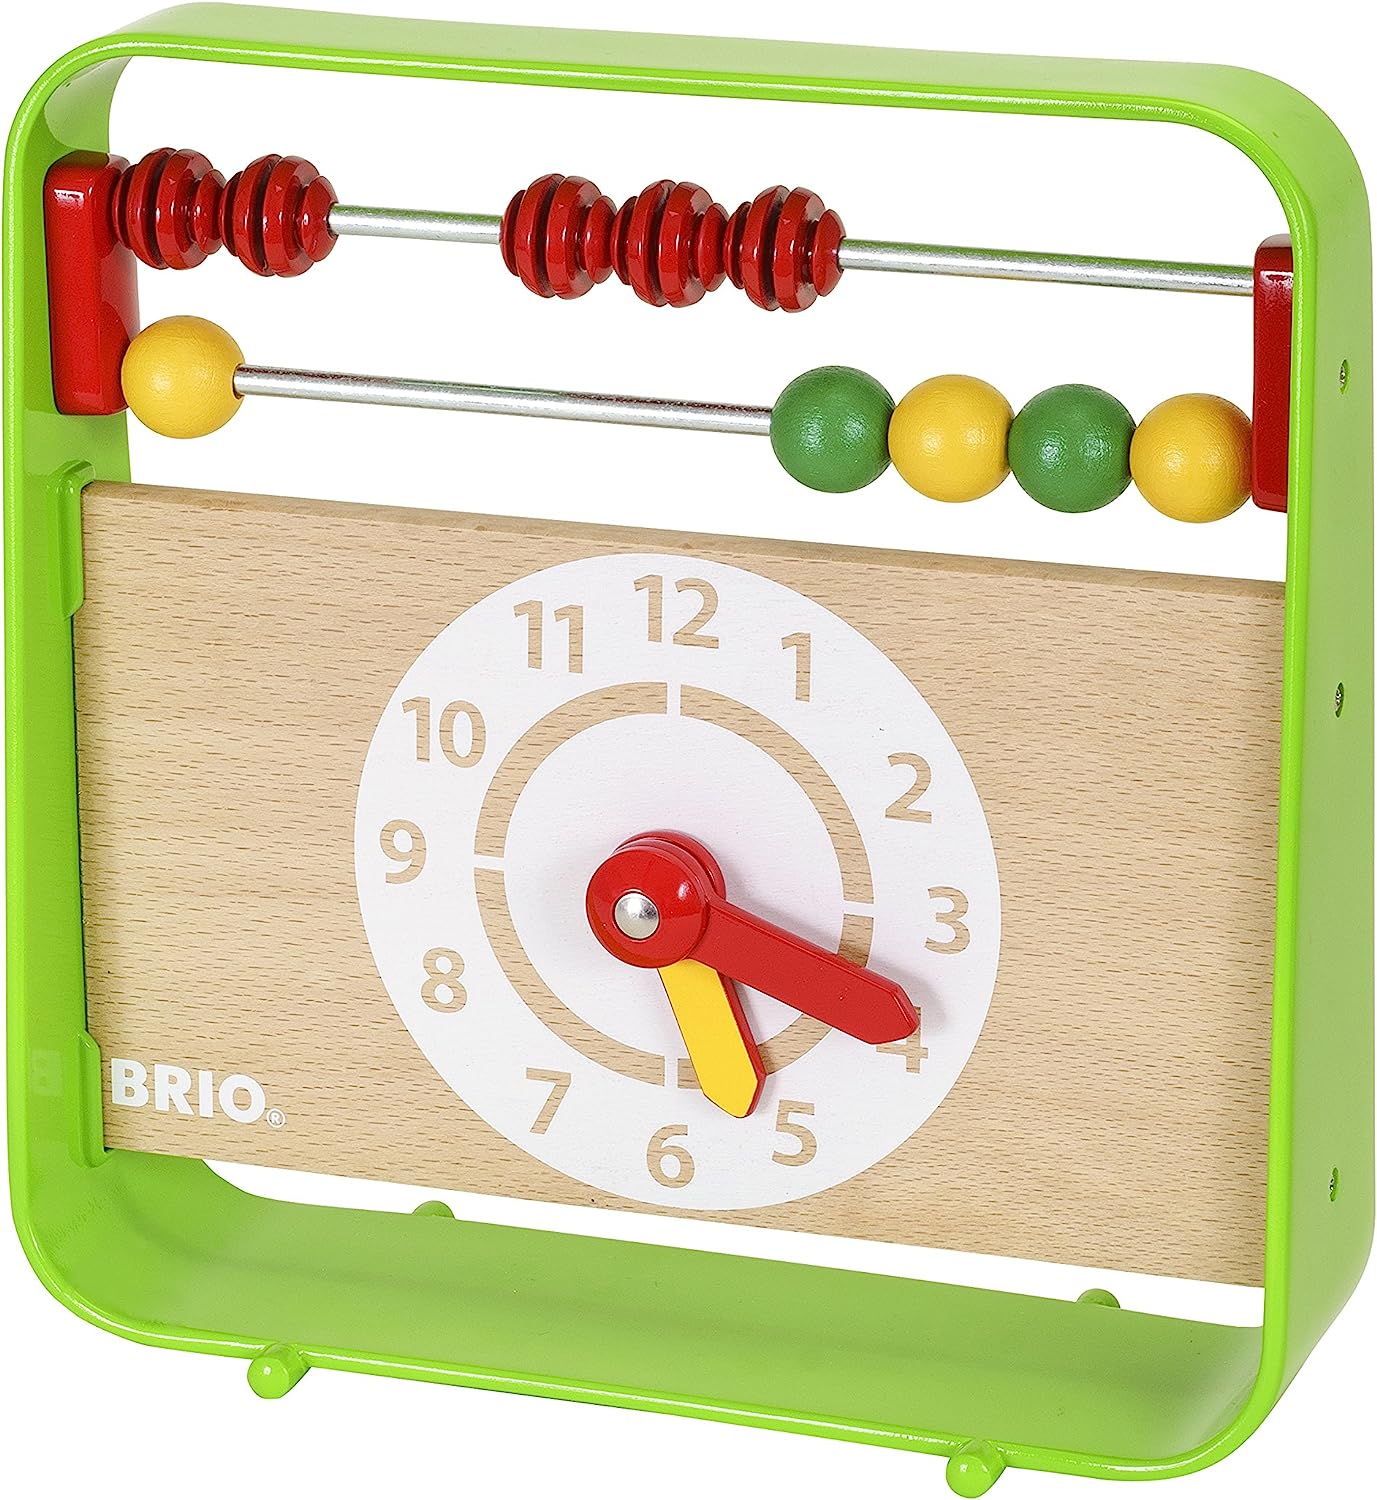 BRIO 30447 Abacus with Clock Preschool Toy